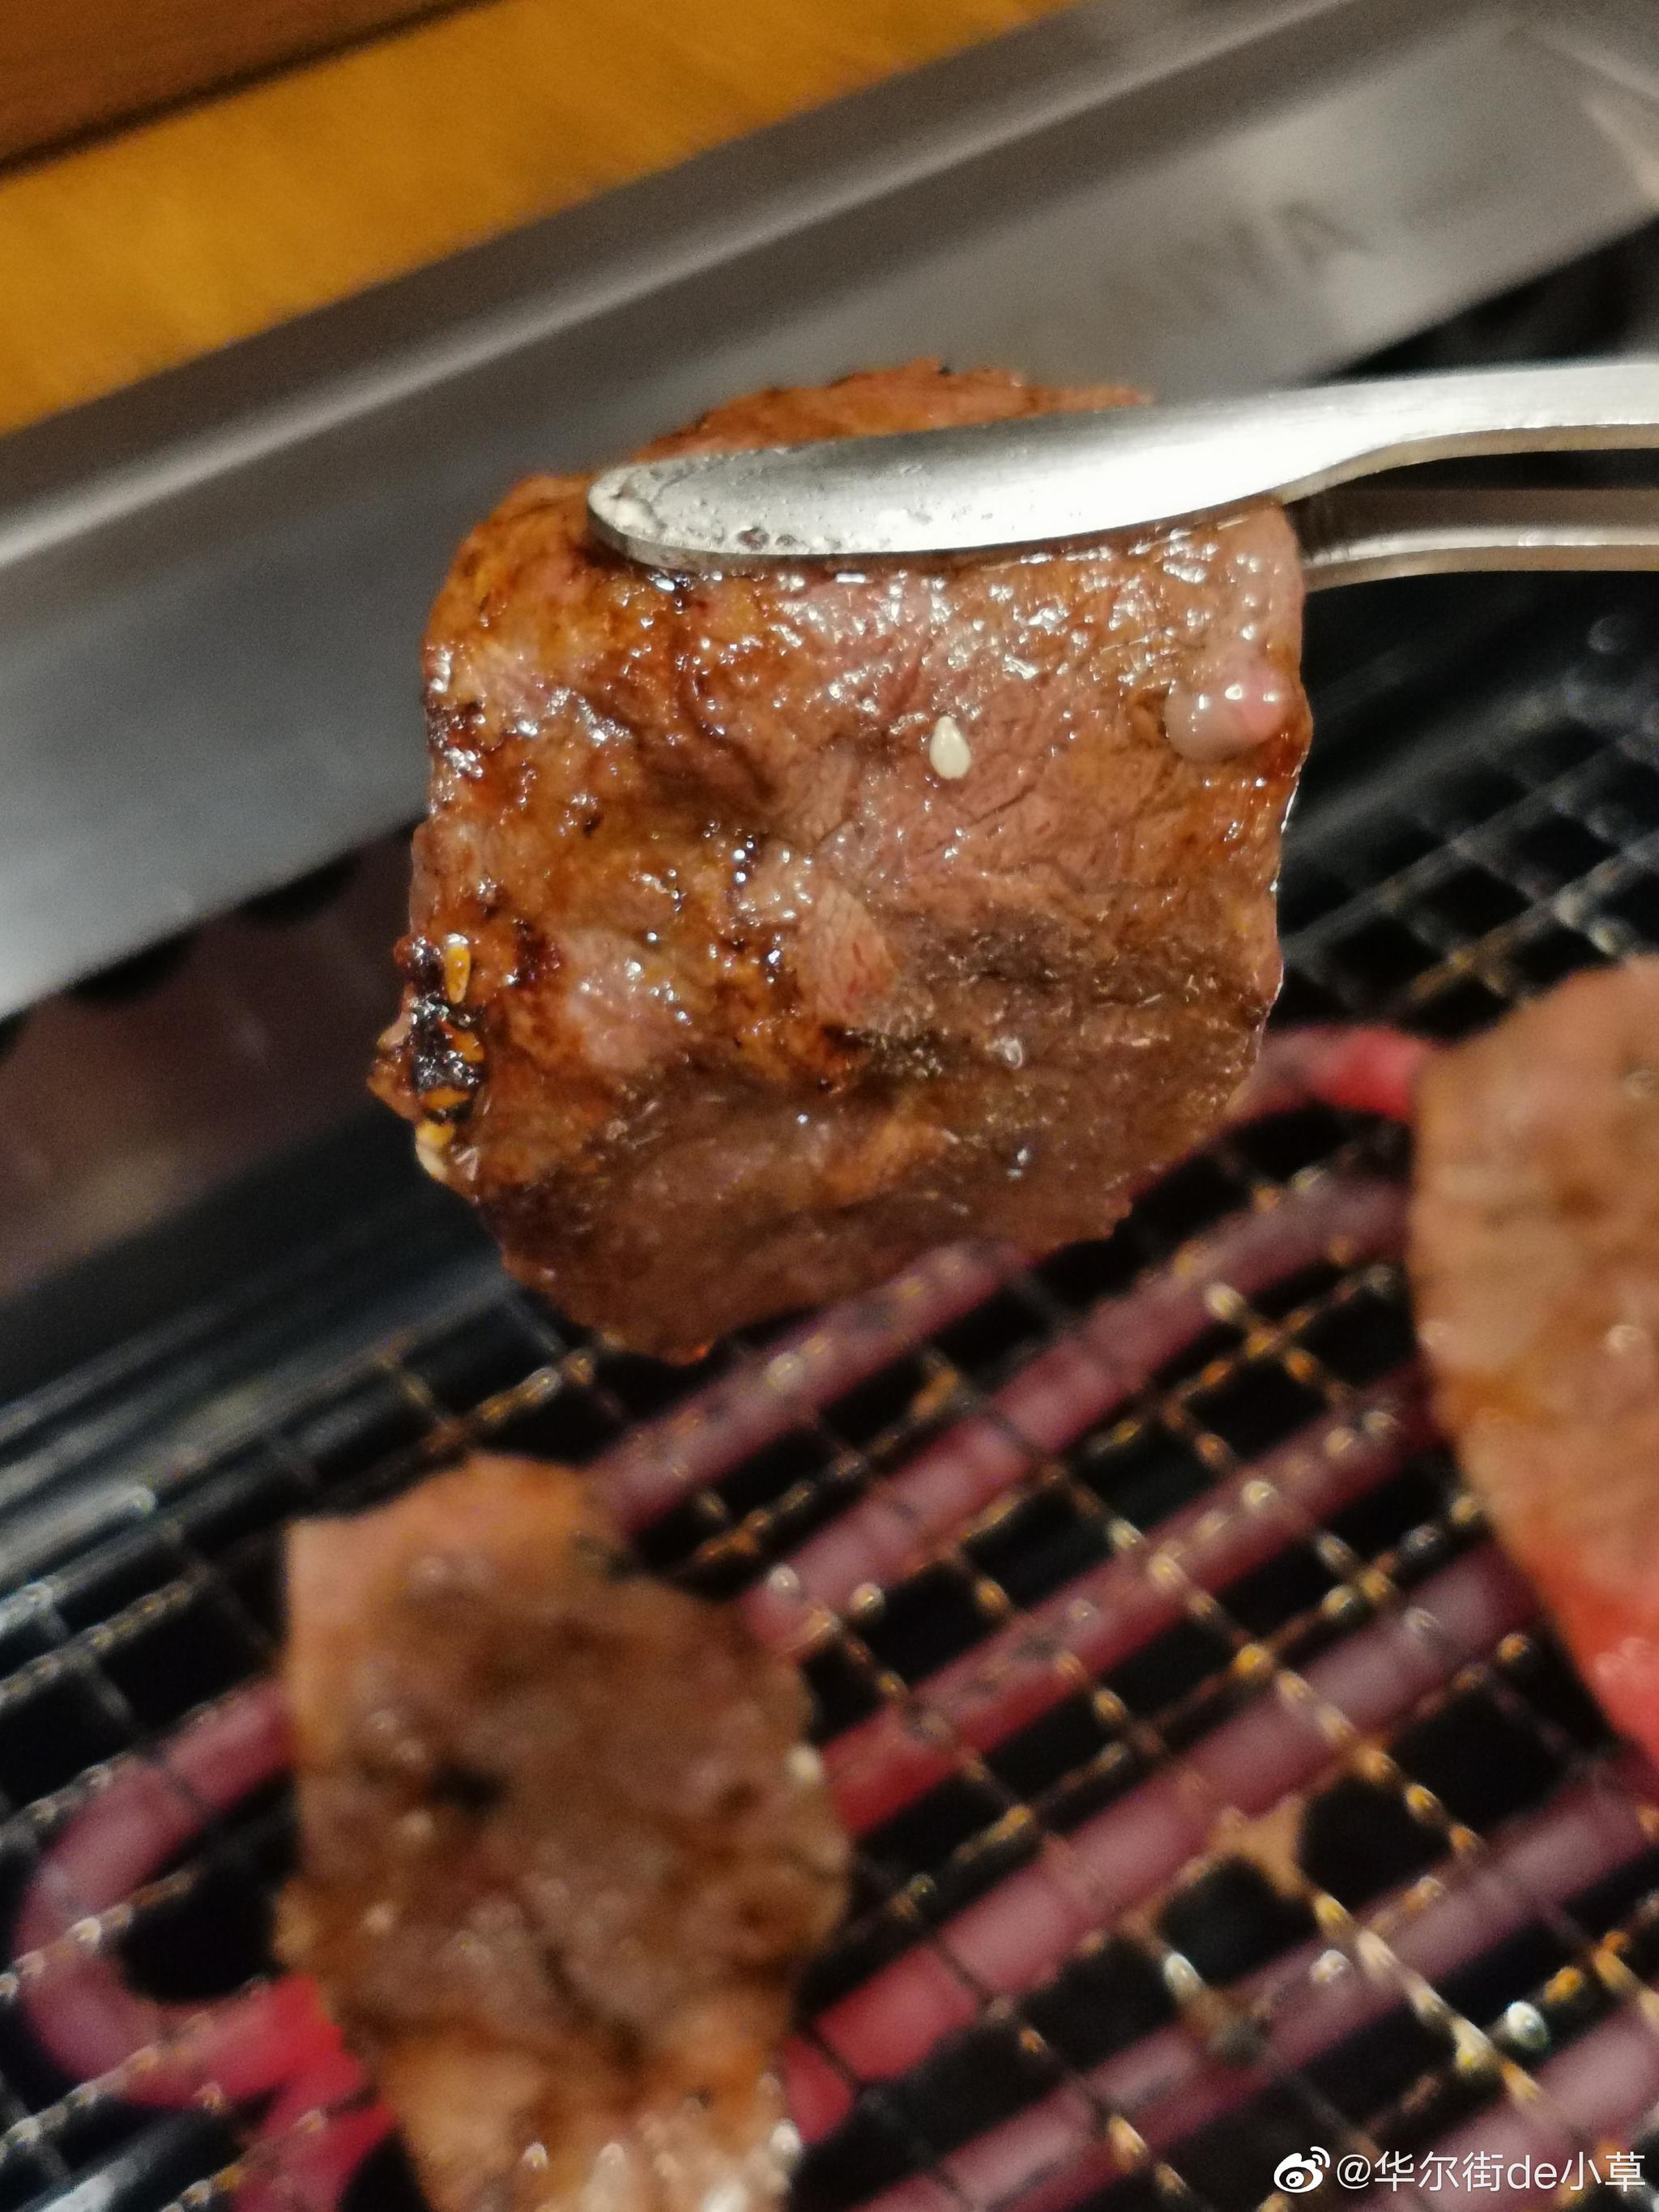 🔥肉魁屋NIKUGAIYA mini·一人食烧肉(南门中大国际店)🔥